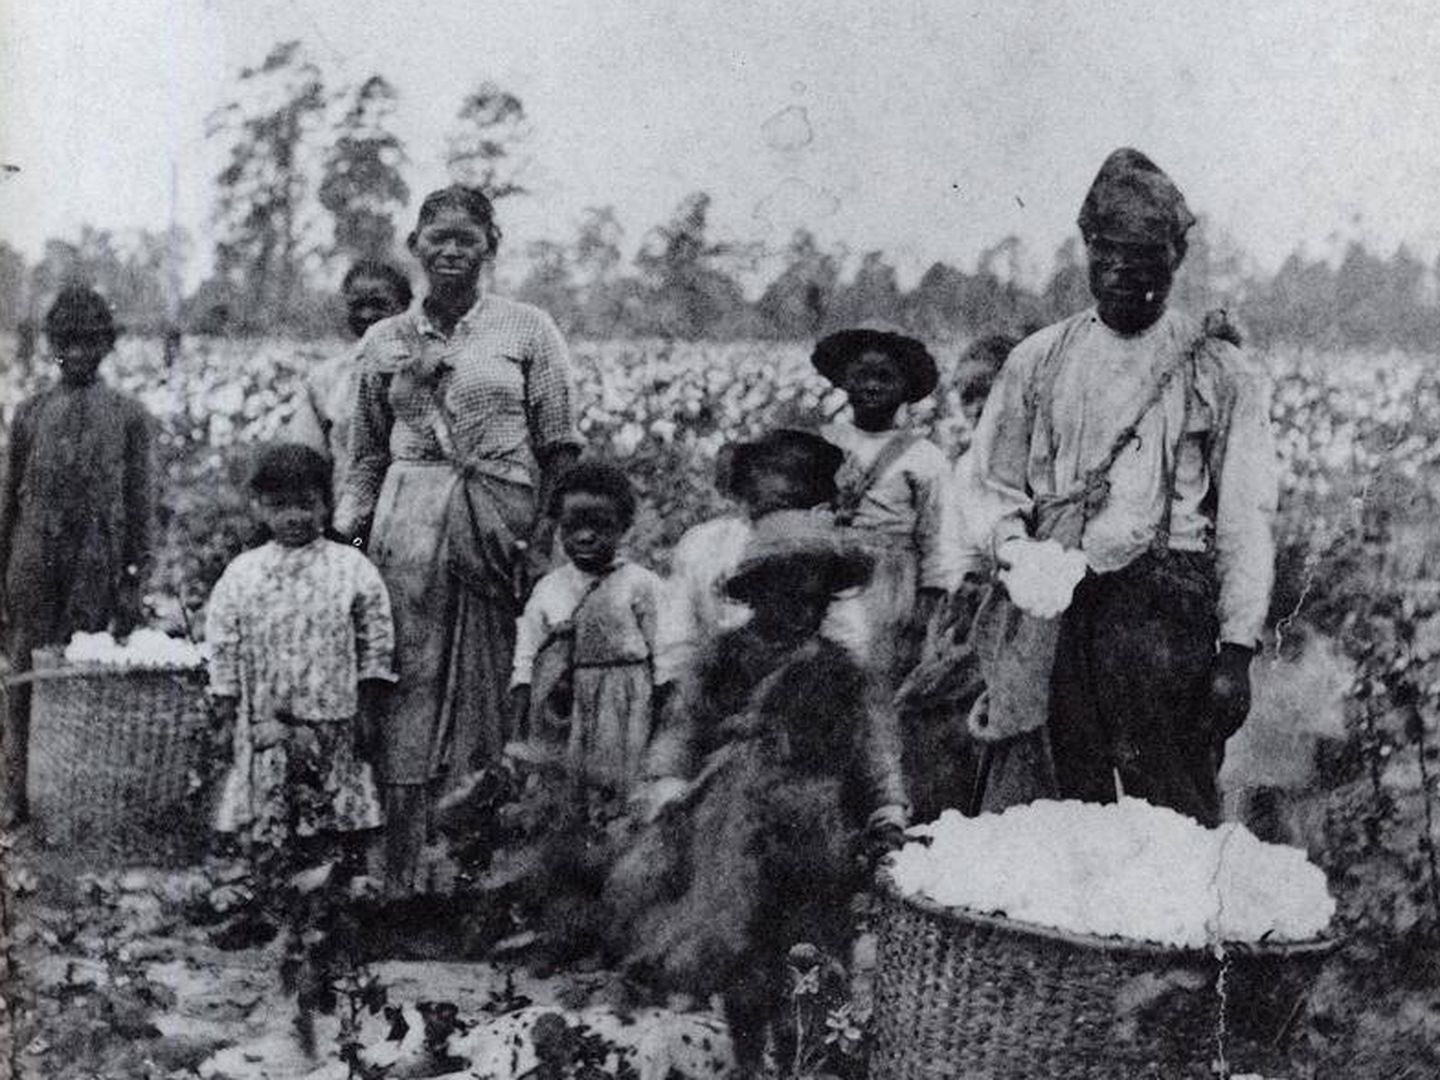 Familia de esclavos en Georgia, alrededor de 1850. (Dominio público)